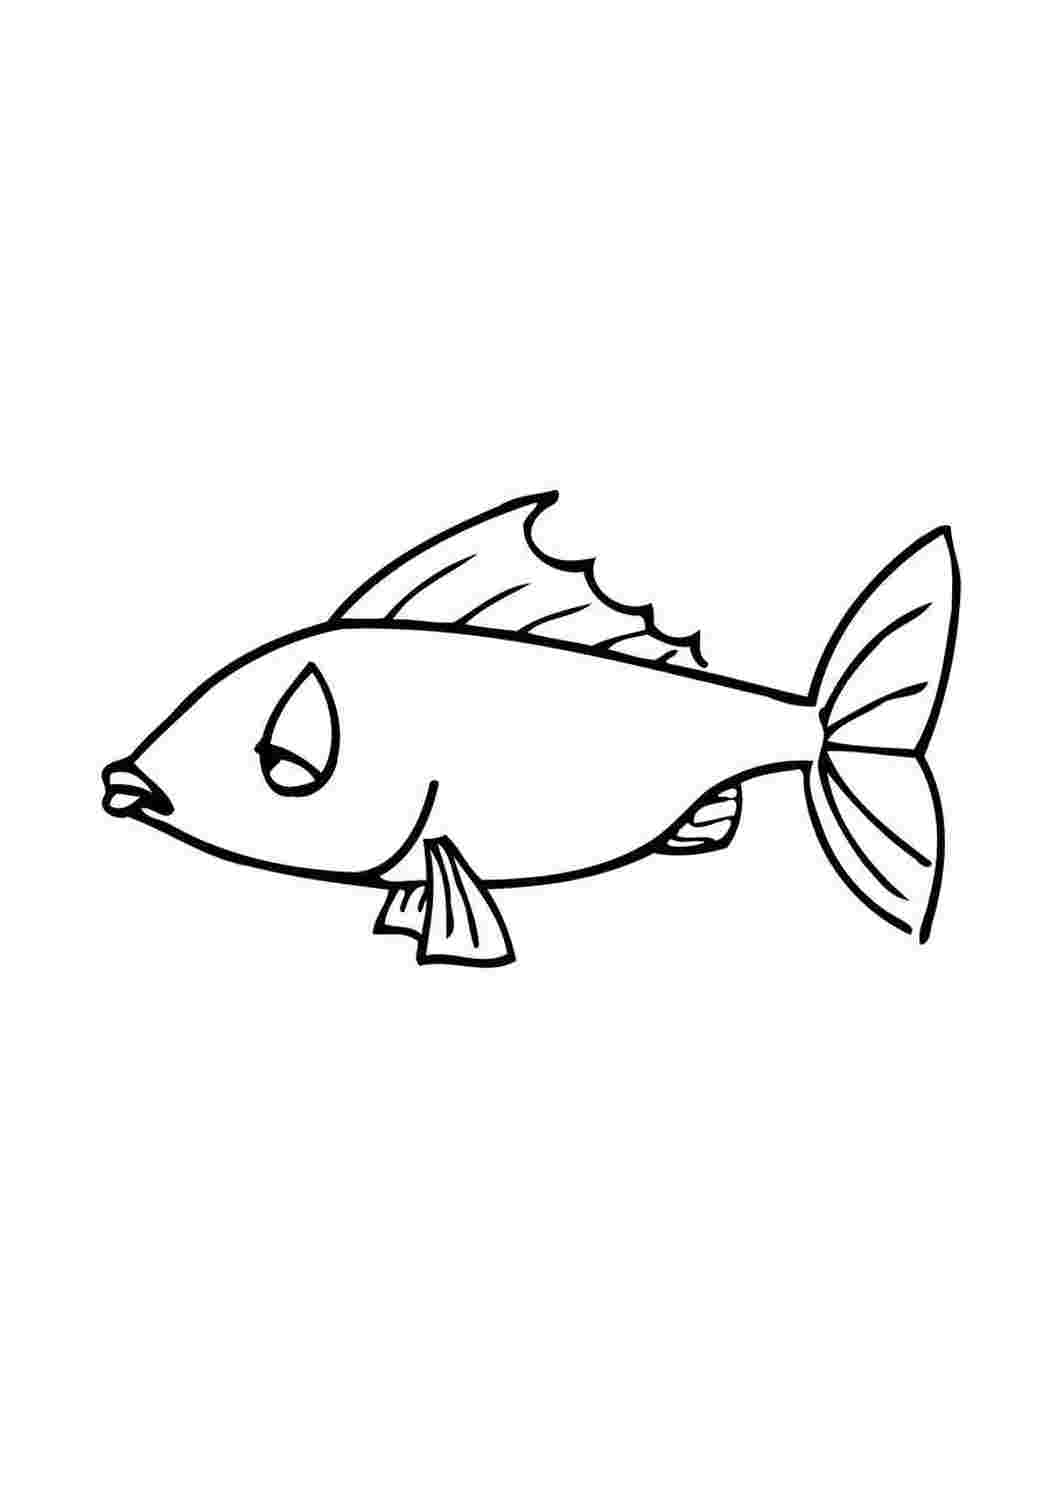 Раскраски раскраски животные рыбки. Скачать раскраски бесплатно. раскраски животные рыбки. Раскраски в формате А4.